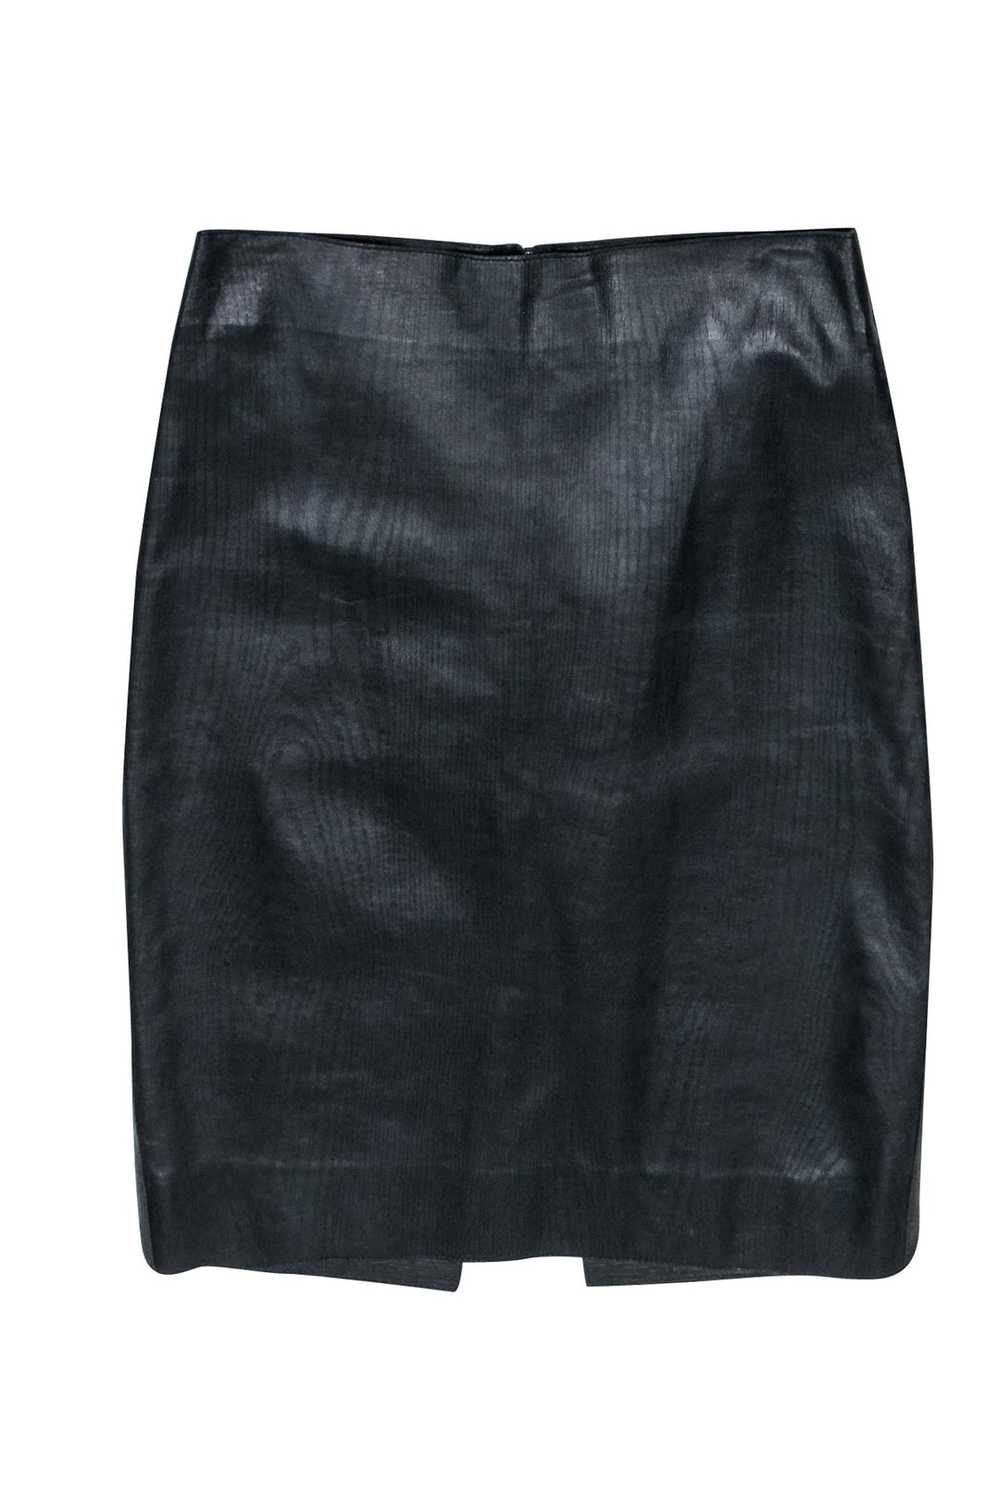 Tufi Duek - Black Textured Leather Pencil Skirt S… - image 1